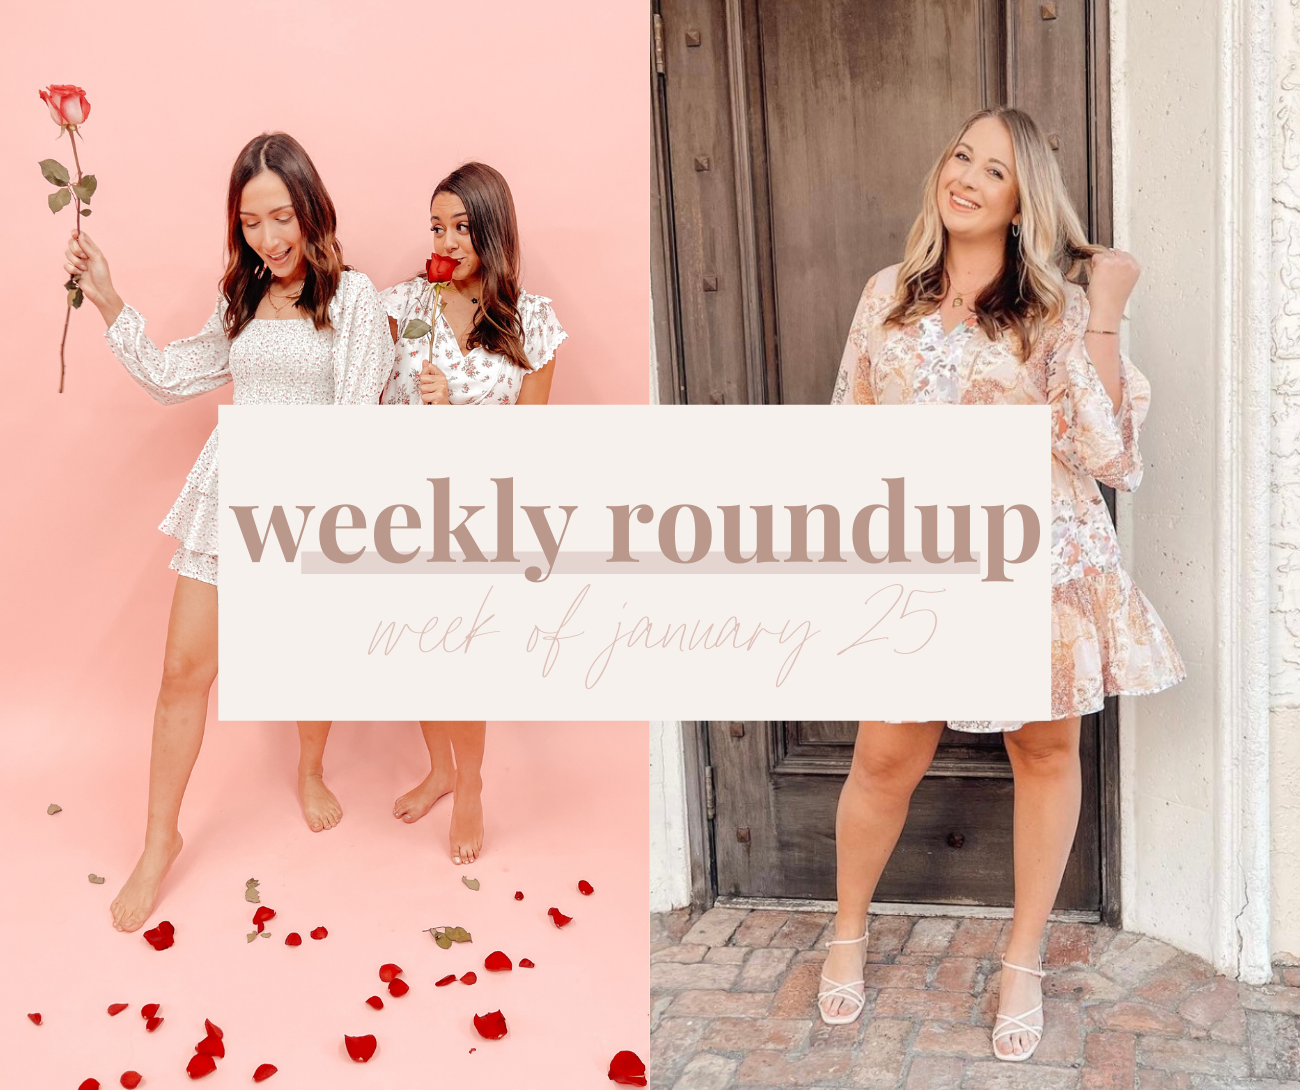 Weekly Roundup - Week of January 25